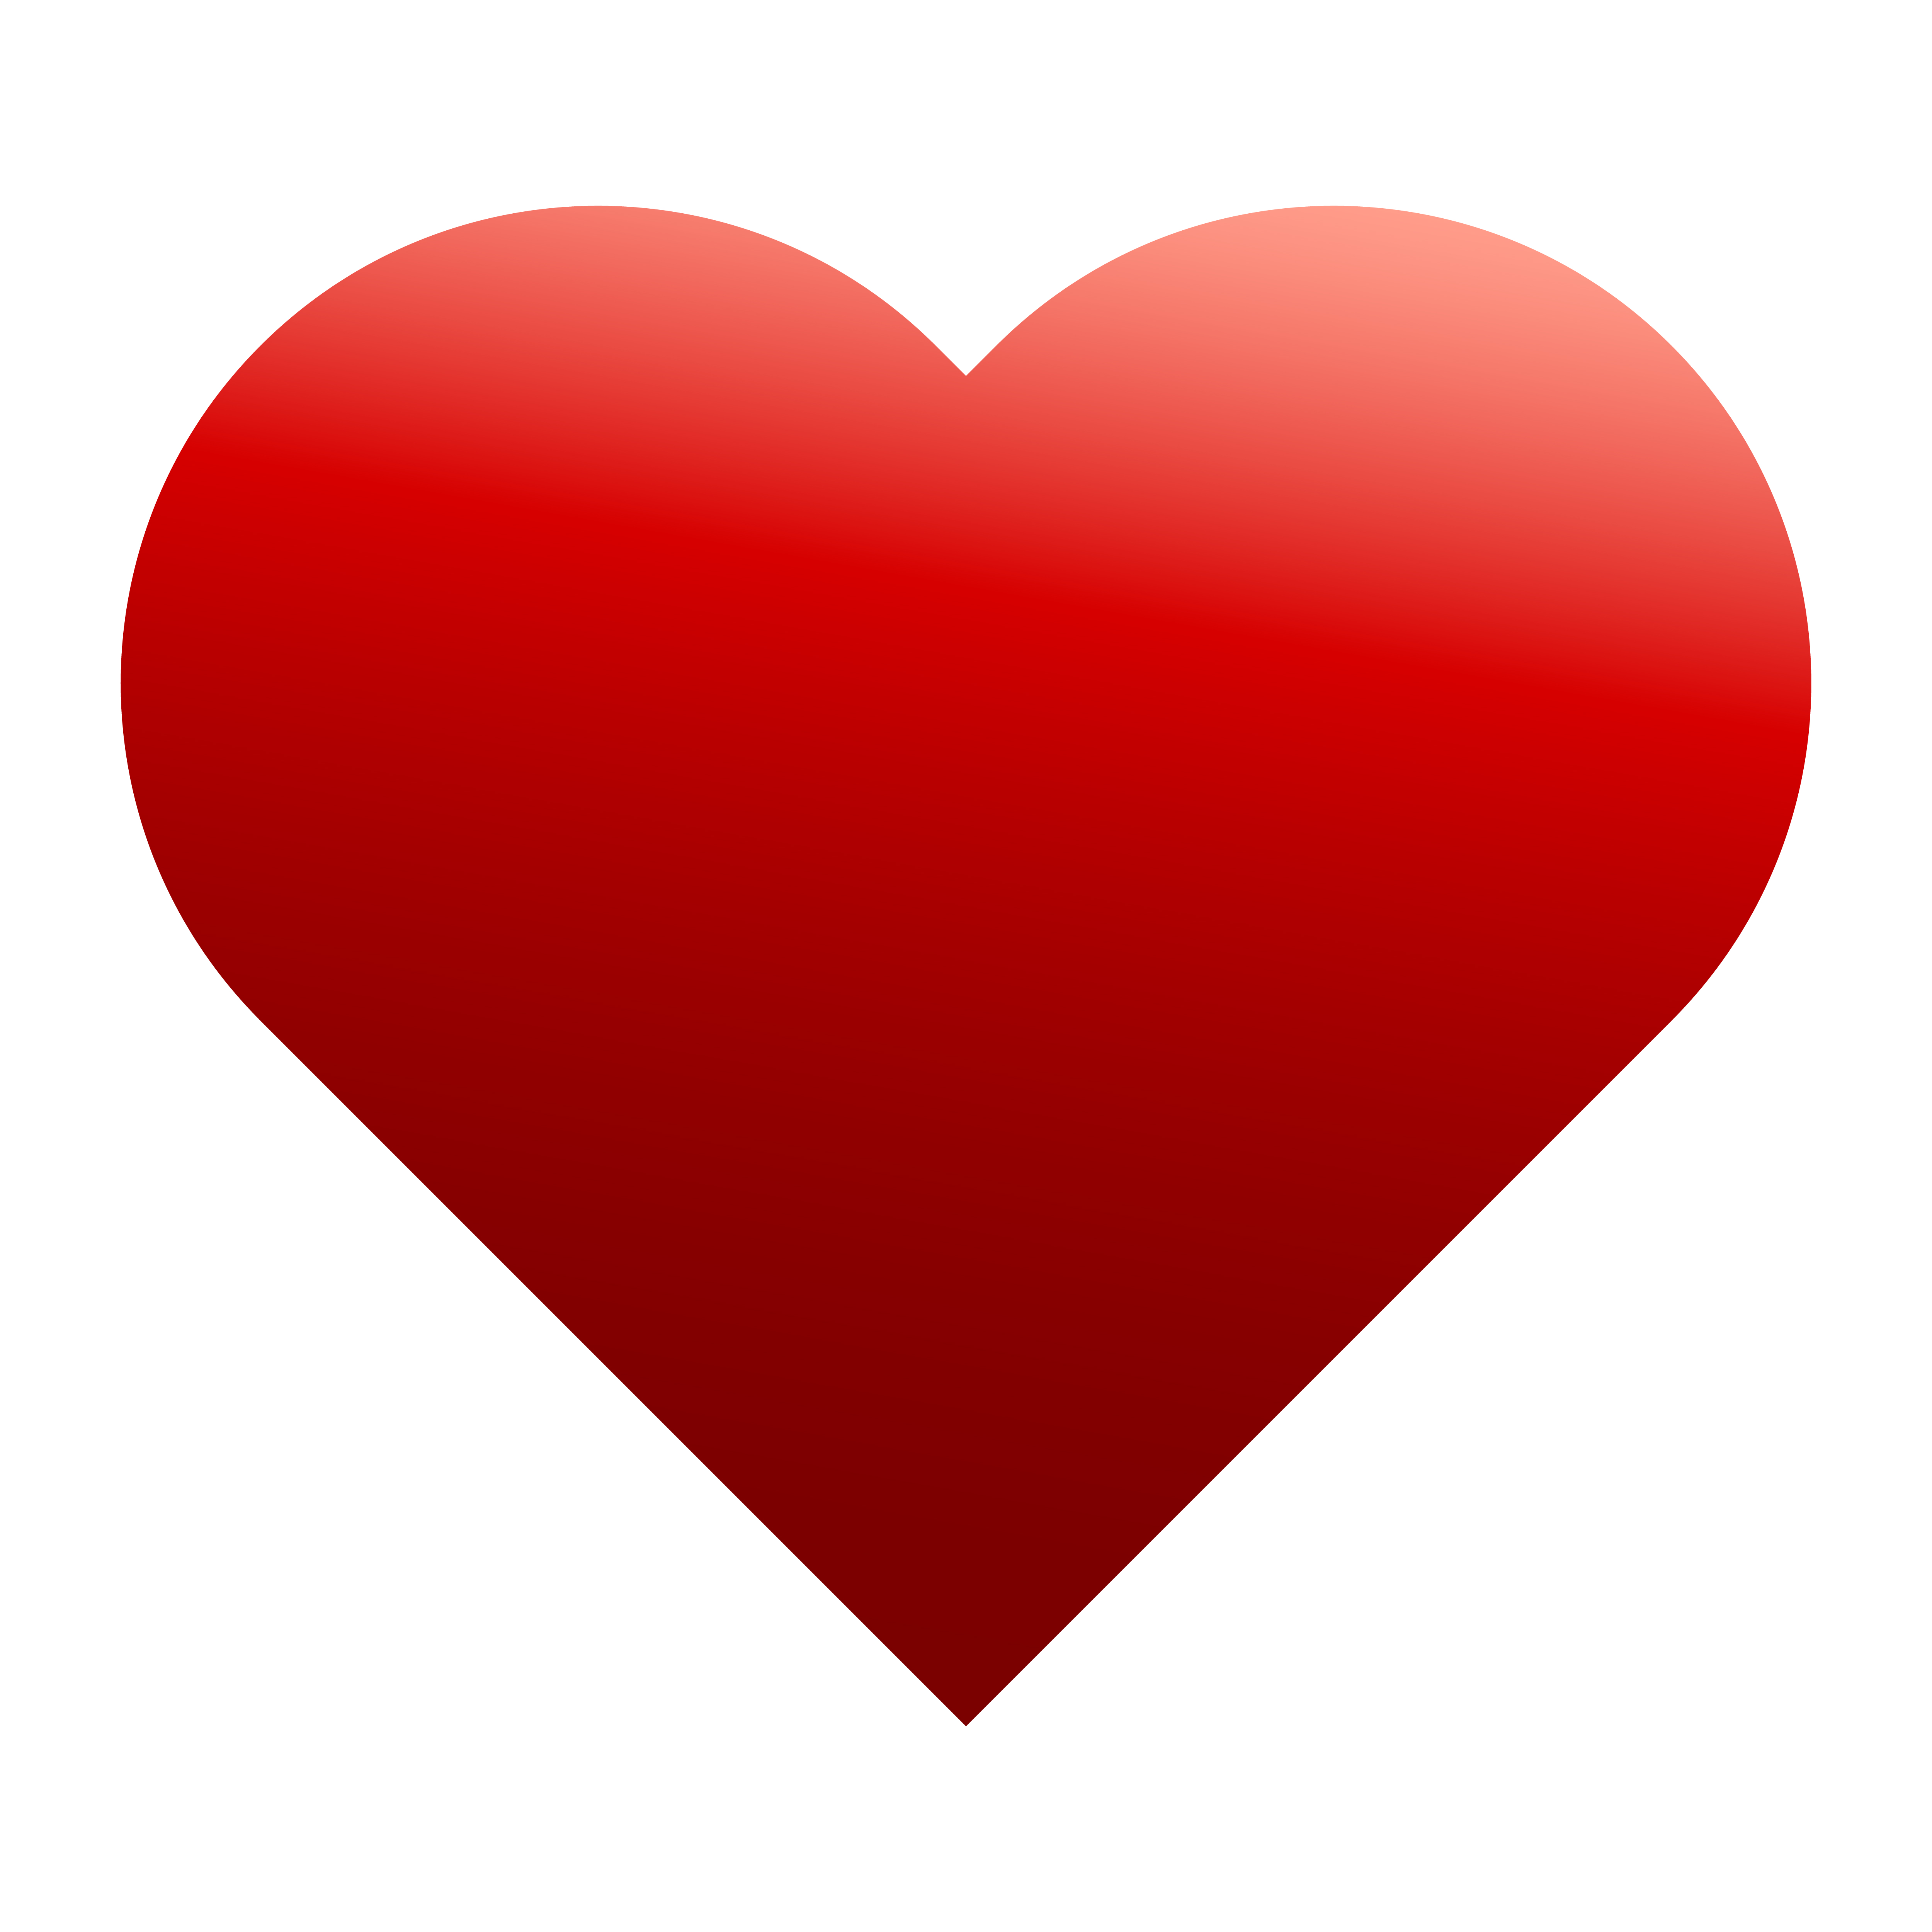 Stylized Heart Free Vector Art - (201 Free Downloads)